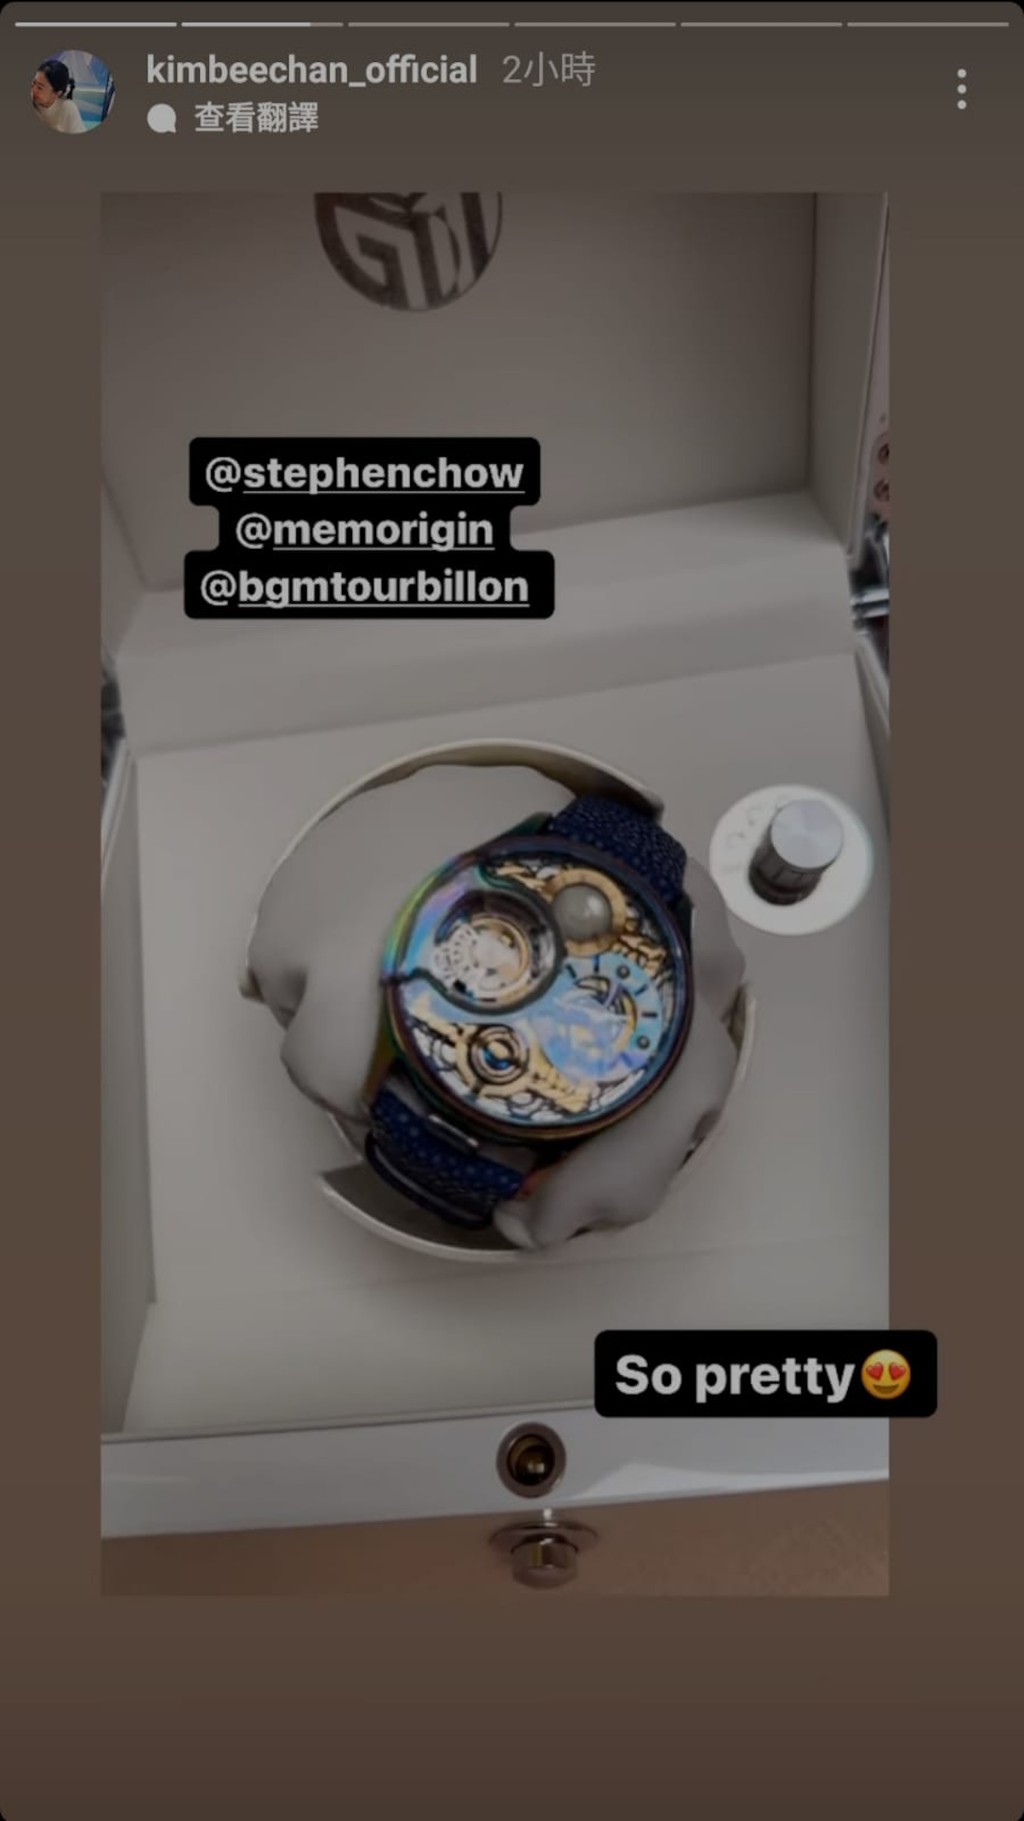 甘比於社交媒體限時動態上分享收到周星馳《美人魚》限量名錶的相片。